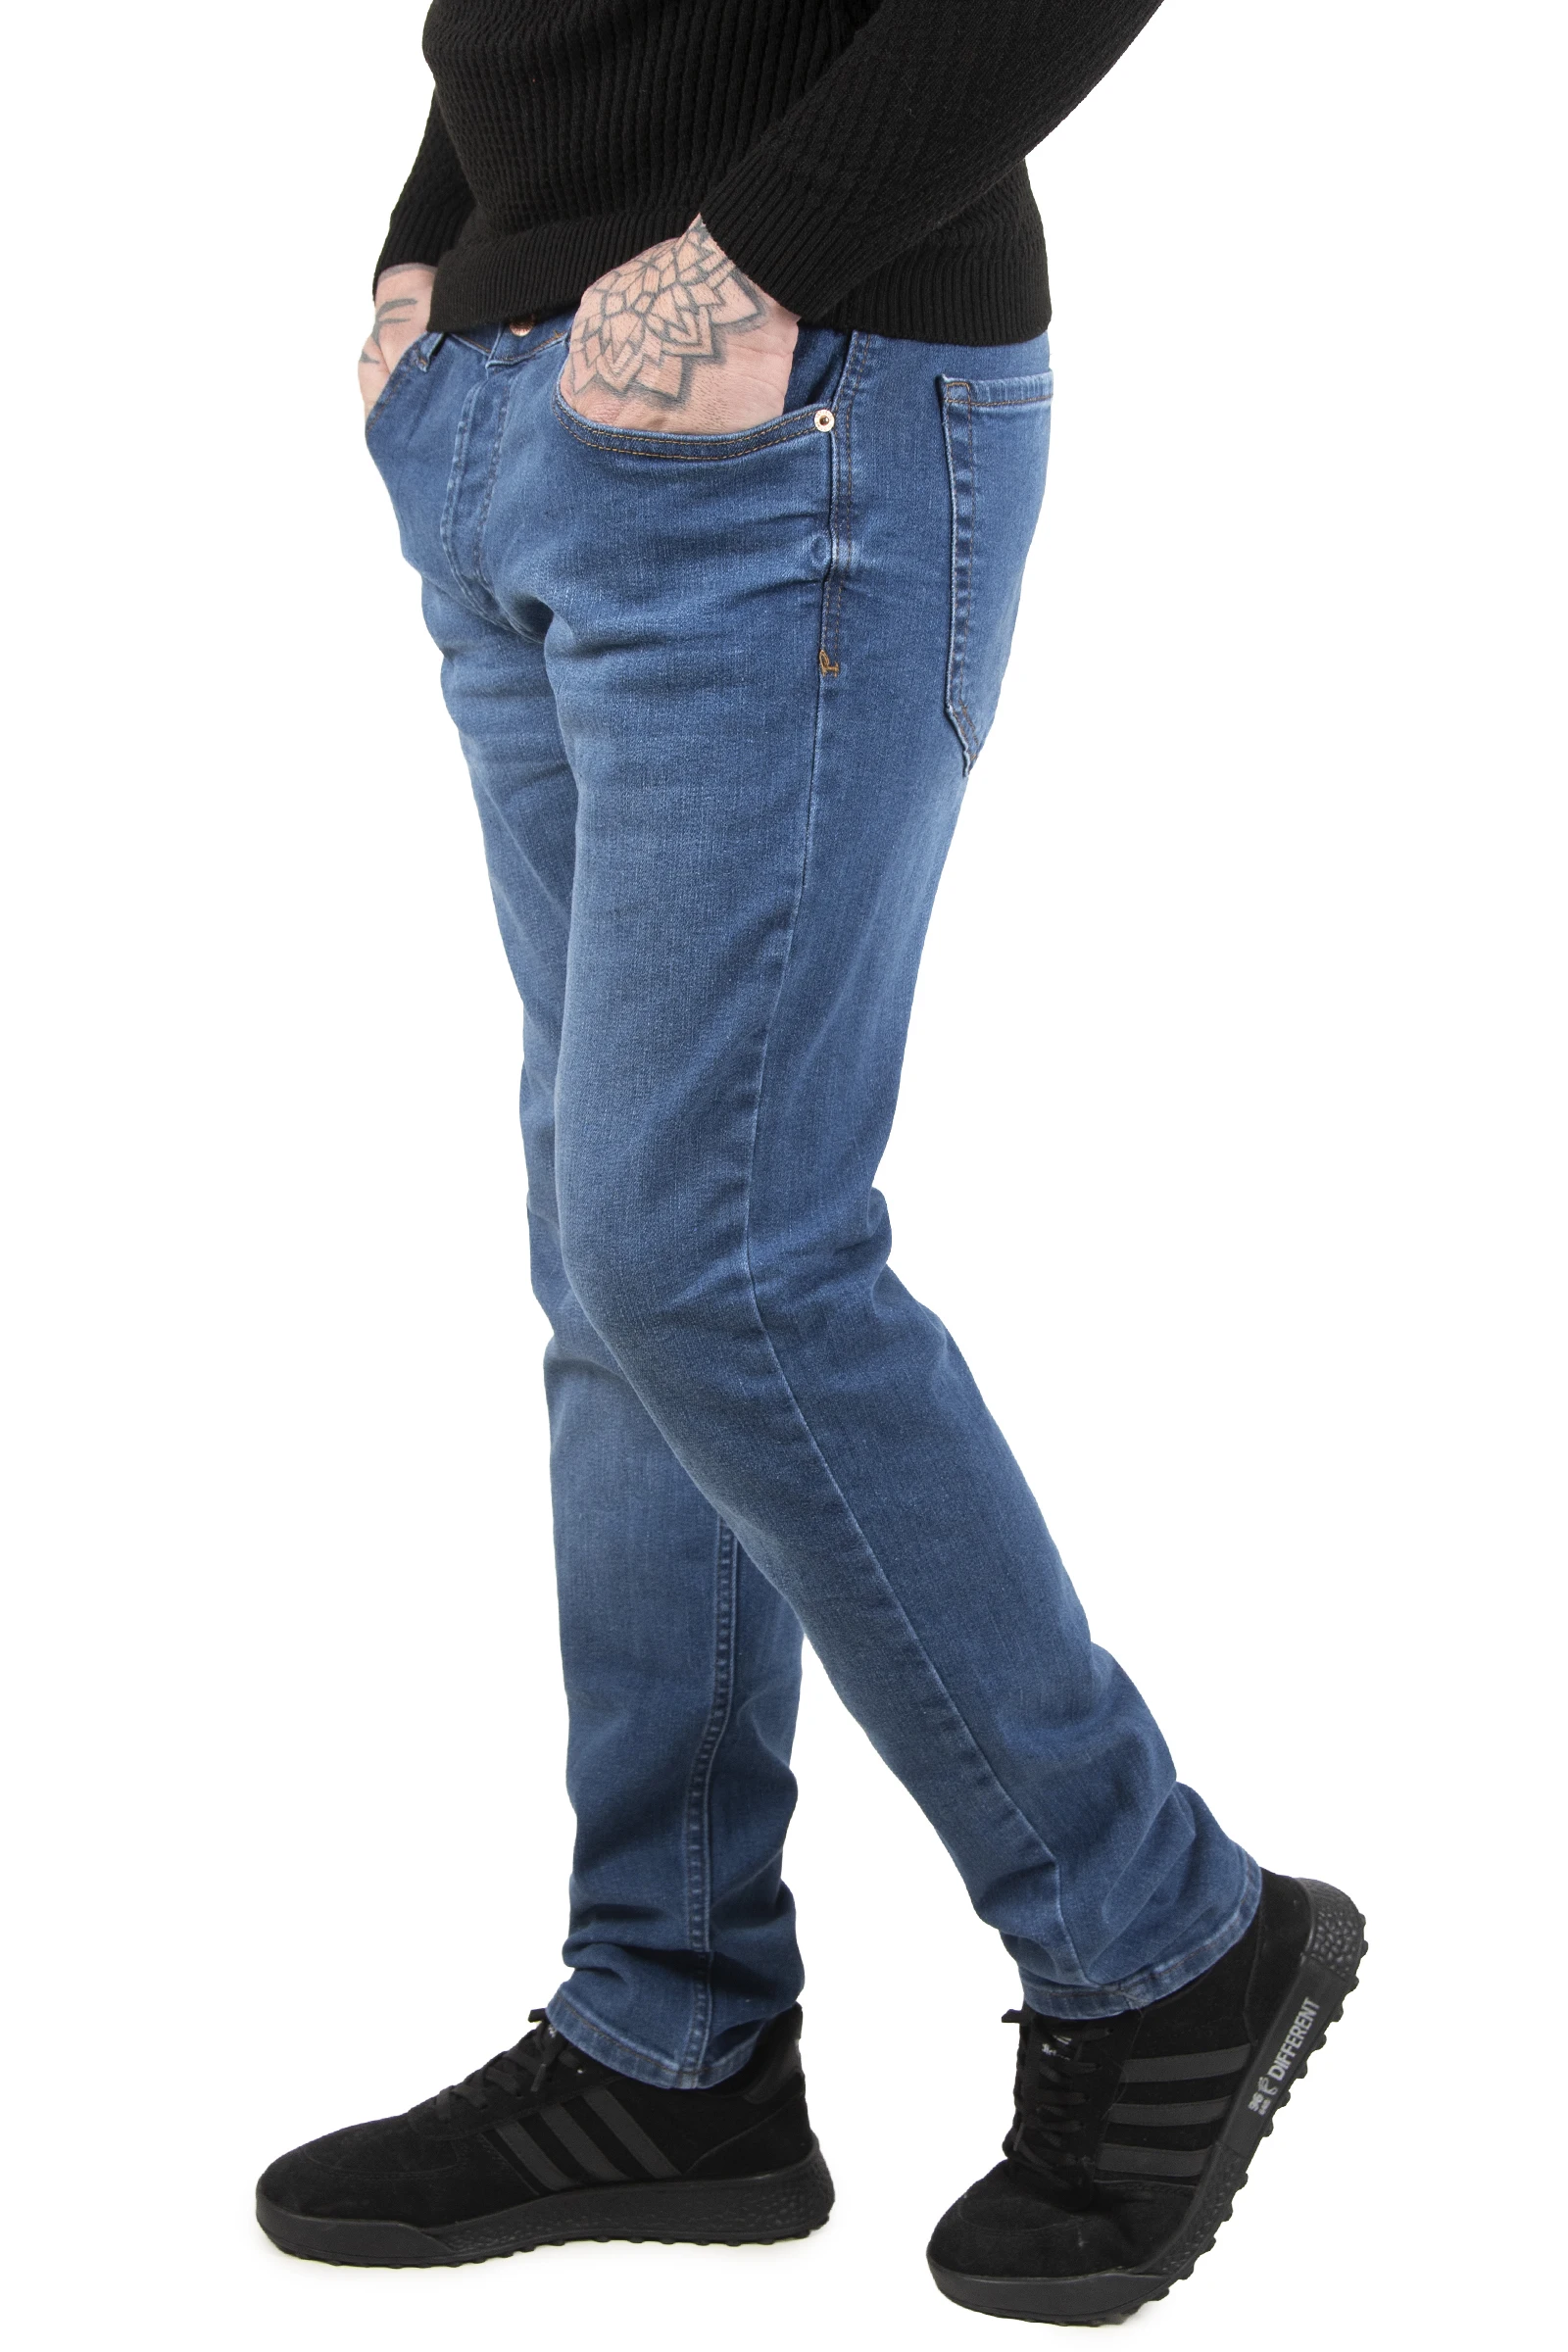 

Мужские джинсы из лайкры с узким вырезом, DeepSEA с ферментированным умыванием, 2202029